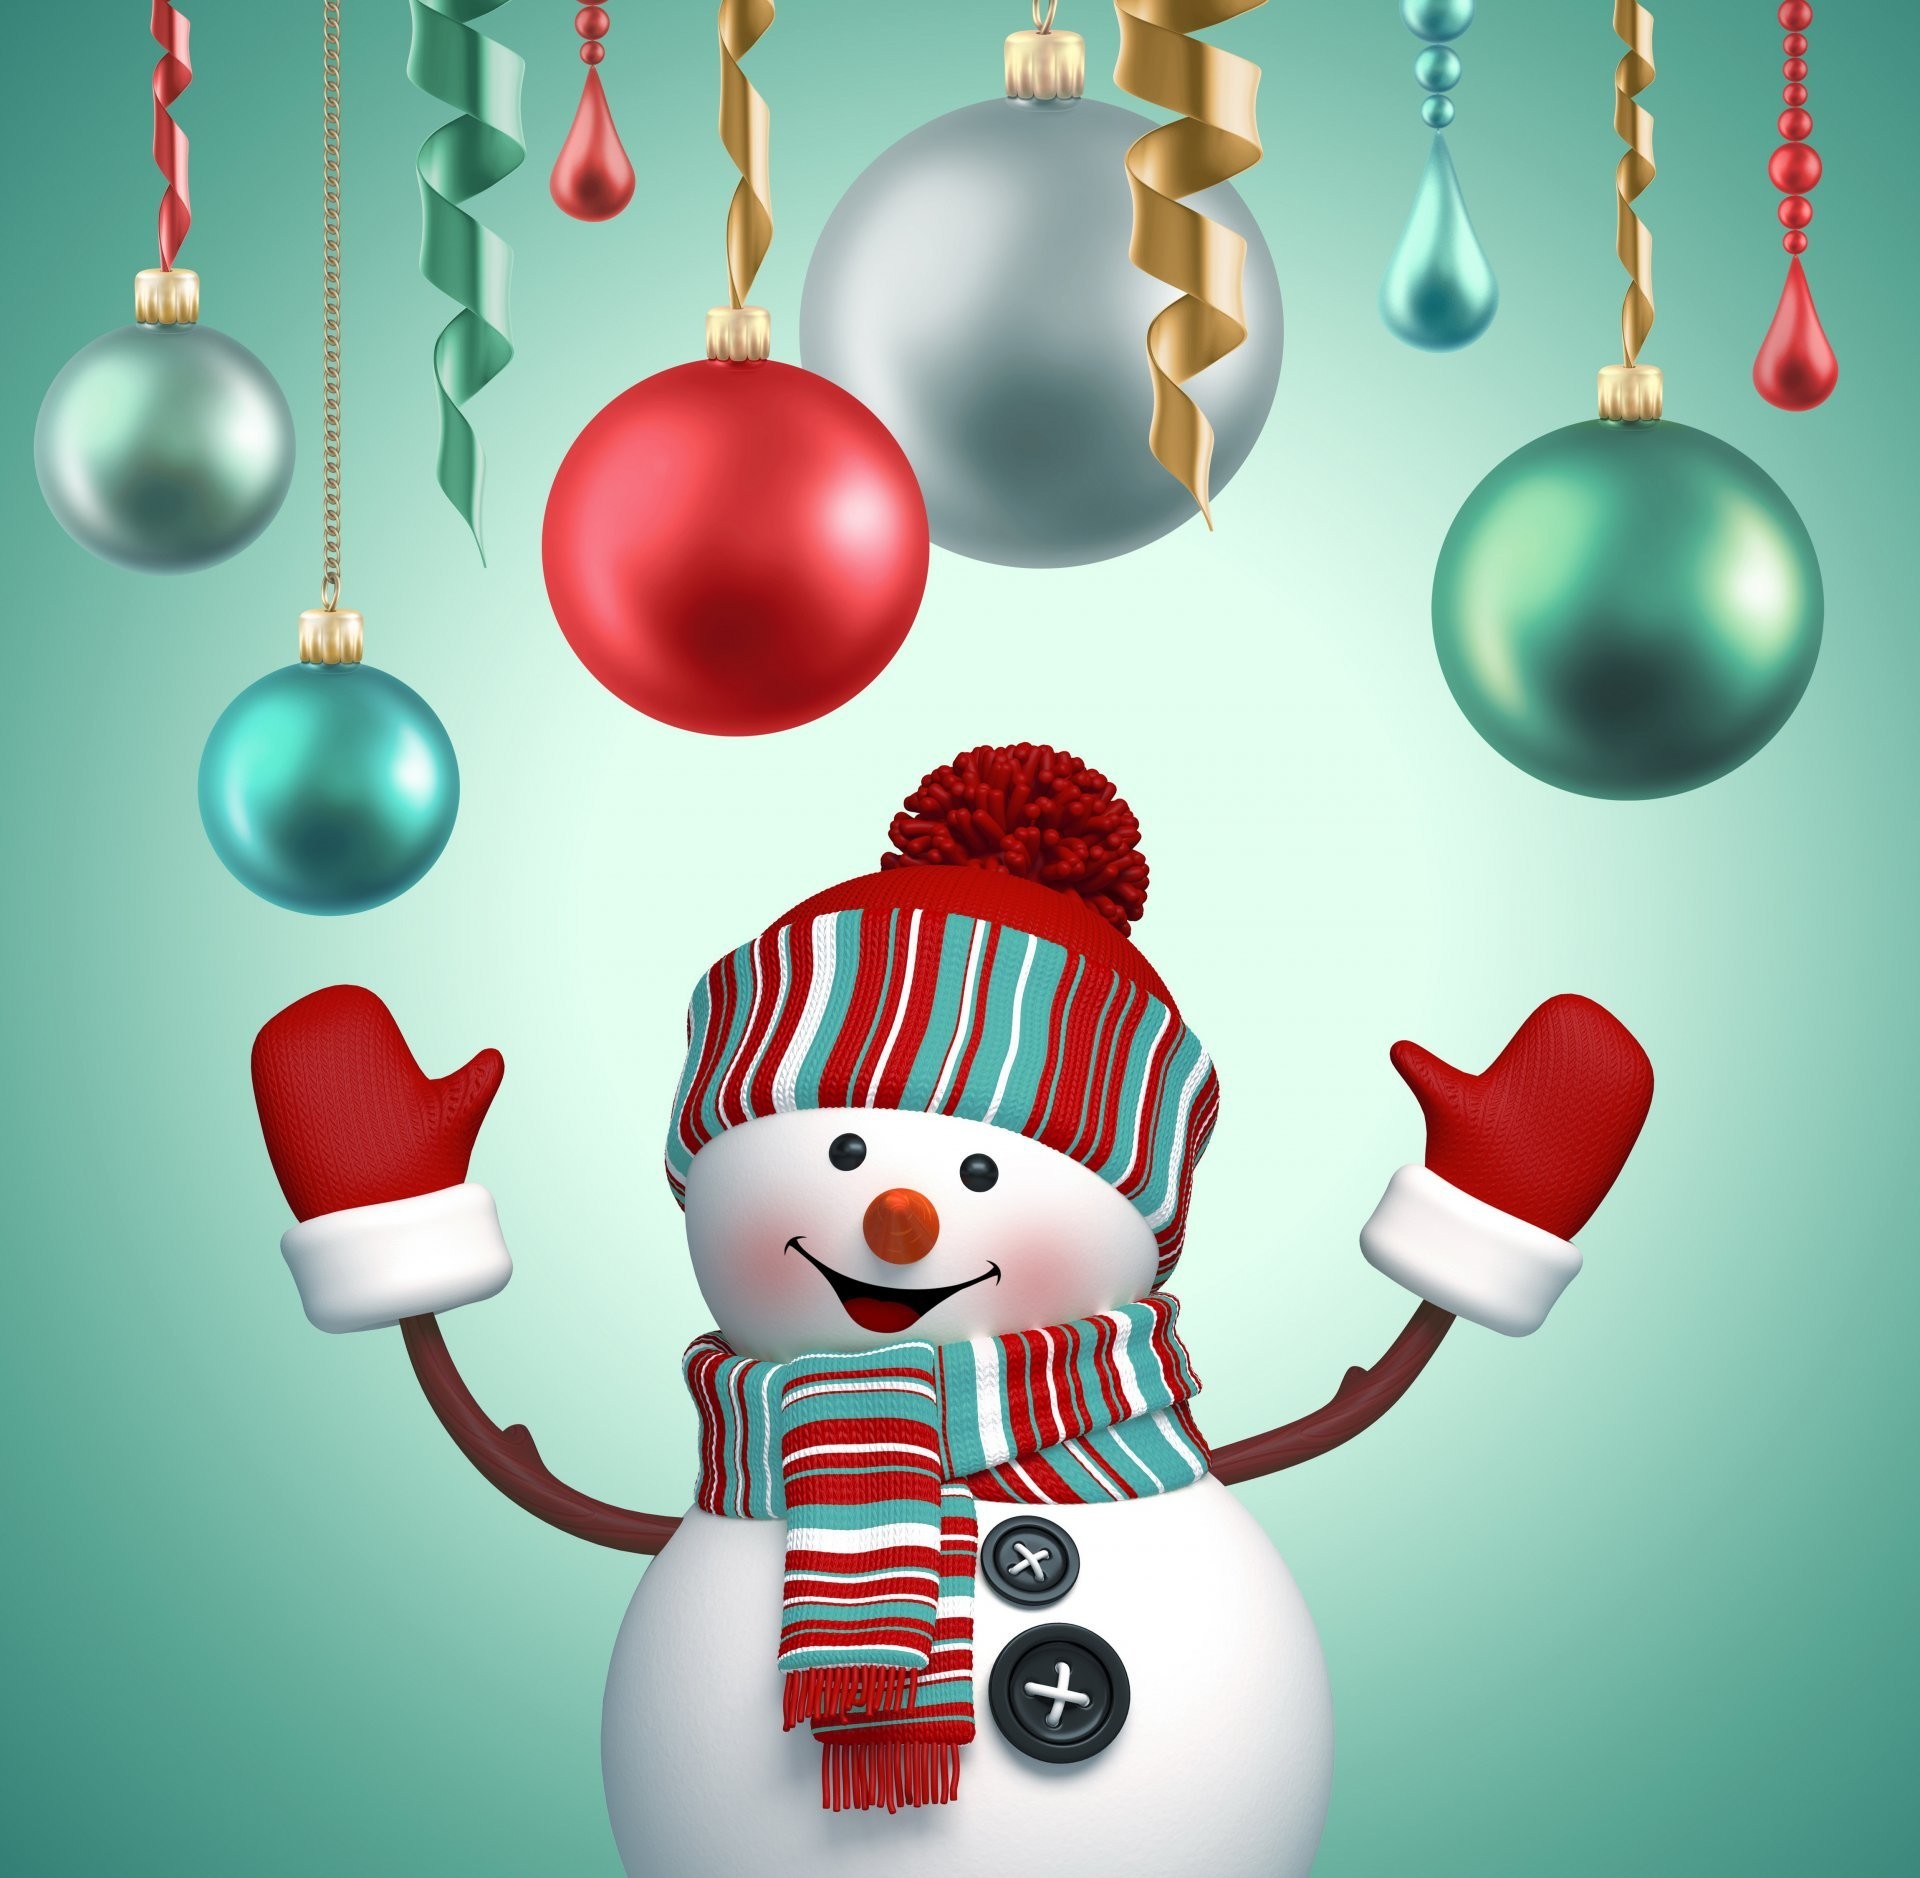 かわいいメリークリスマスの壁紙,クリスマスオーナメント,休日の飾り,クリスマス,雪だるま,クリスマスの飾り